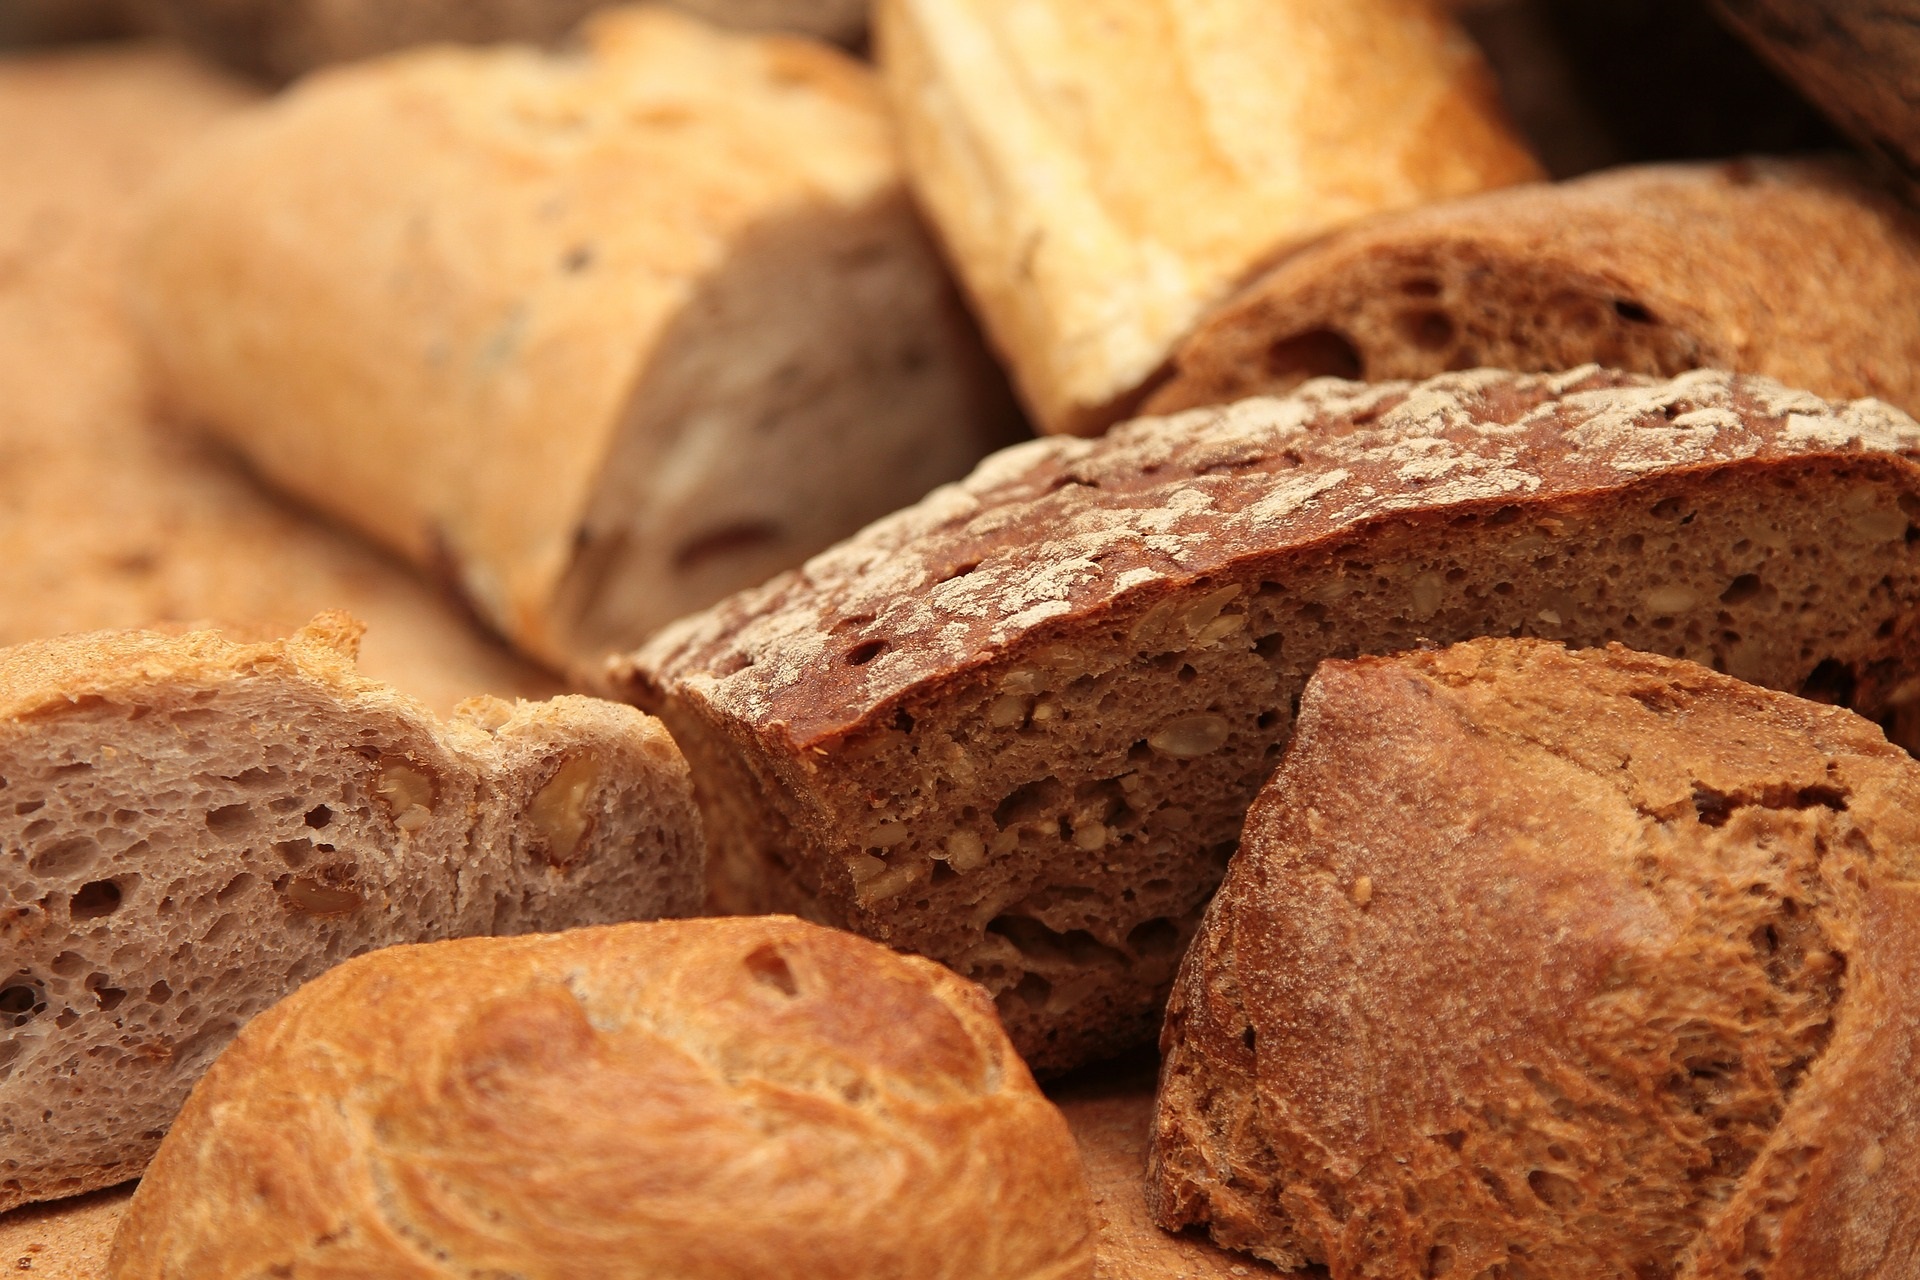 Purple Bread etabliert sich zunehmend als gesunde Alternative zum beliebten Weißbrot.